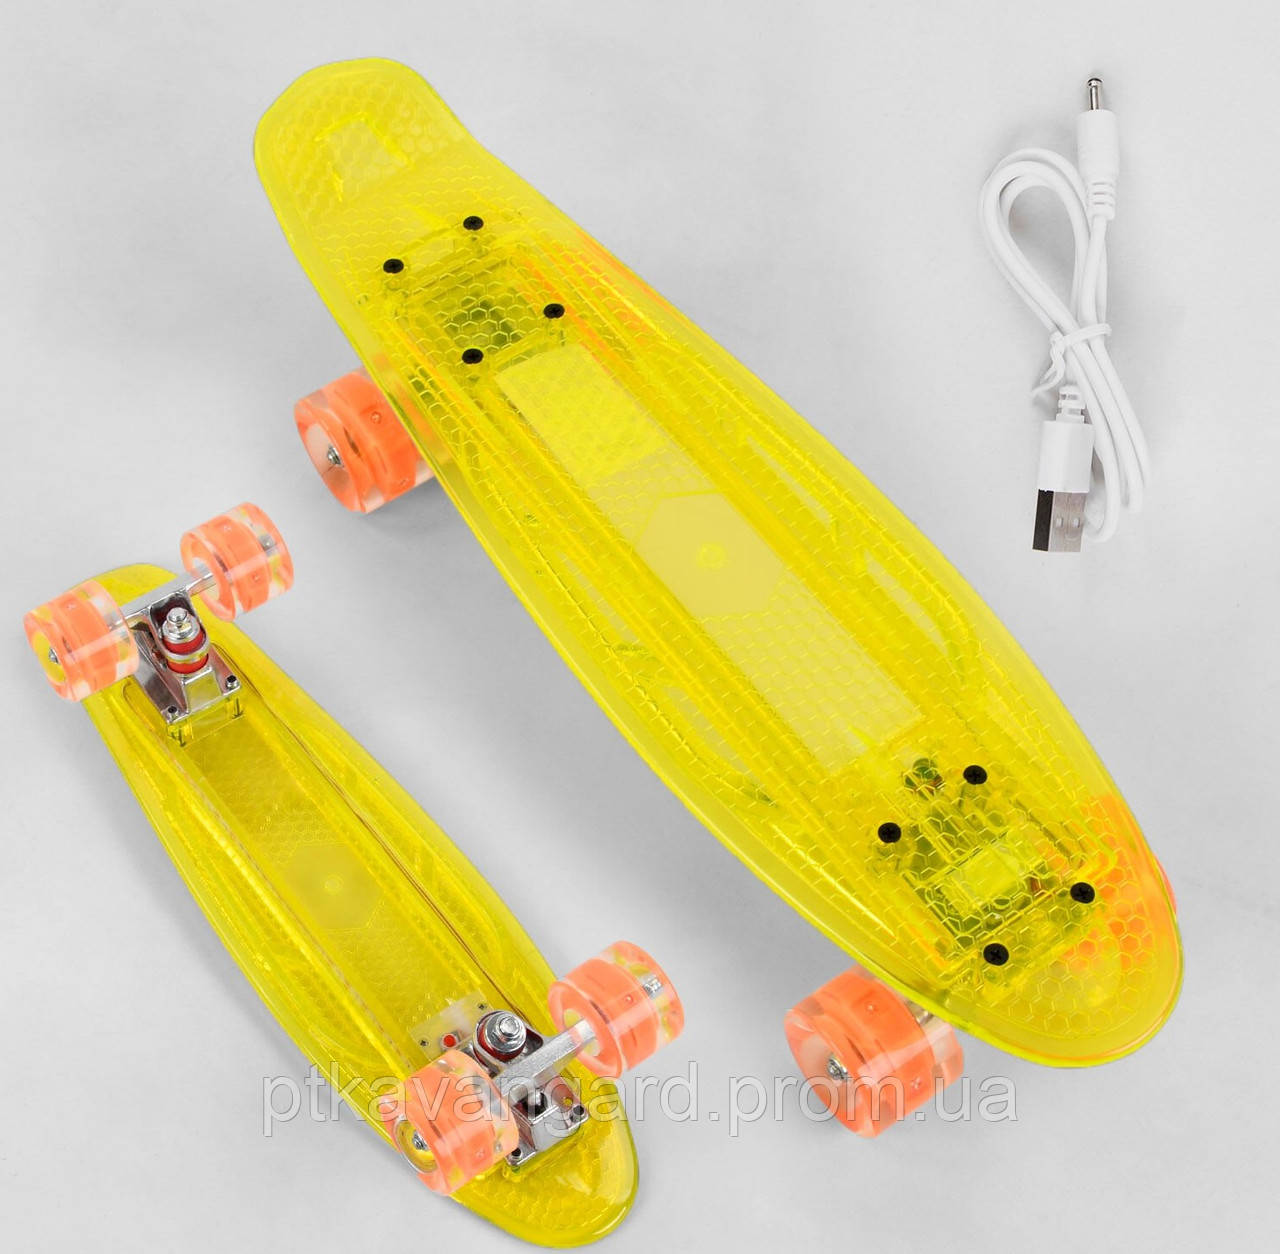 Скейт Пенні борд світний прозорий Жовтий Best Board, дека зі світлом, колеса PU зі світлом, заряджання USB